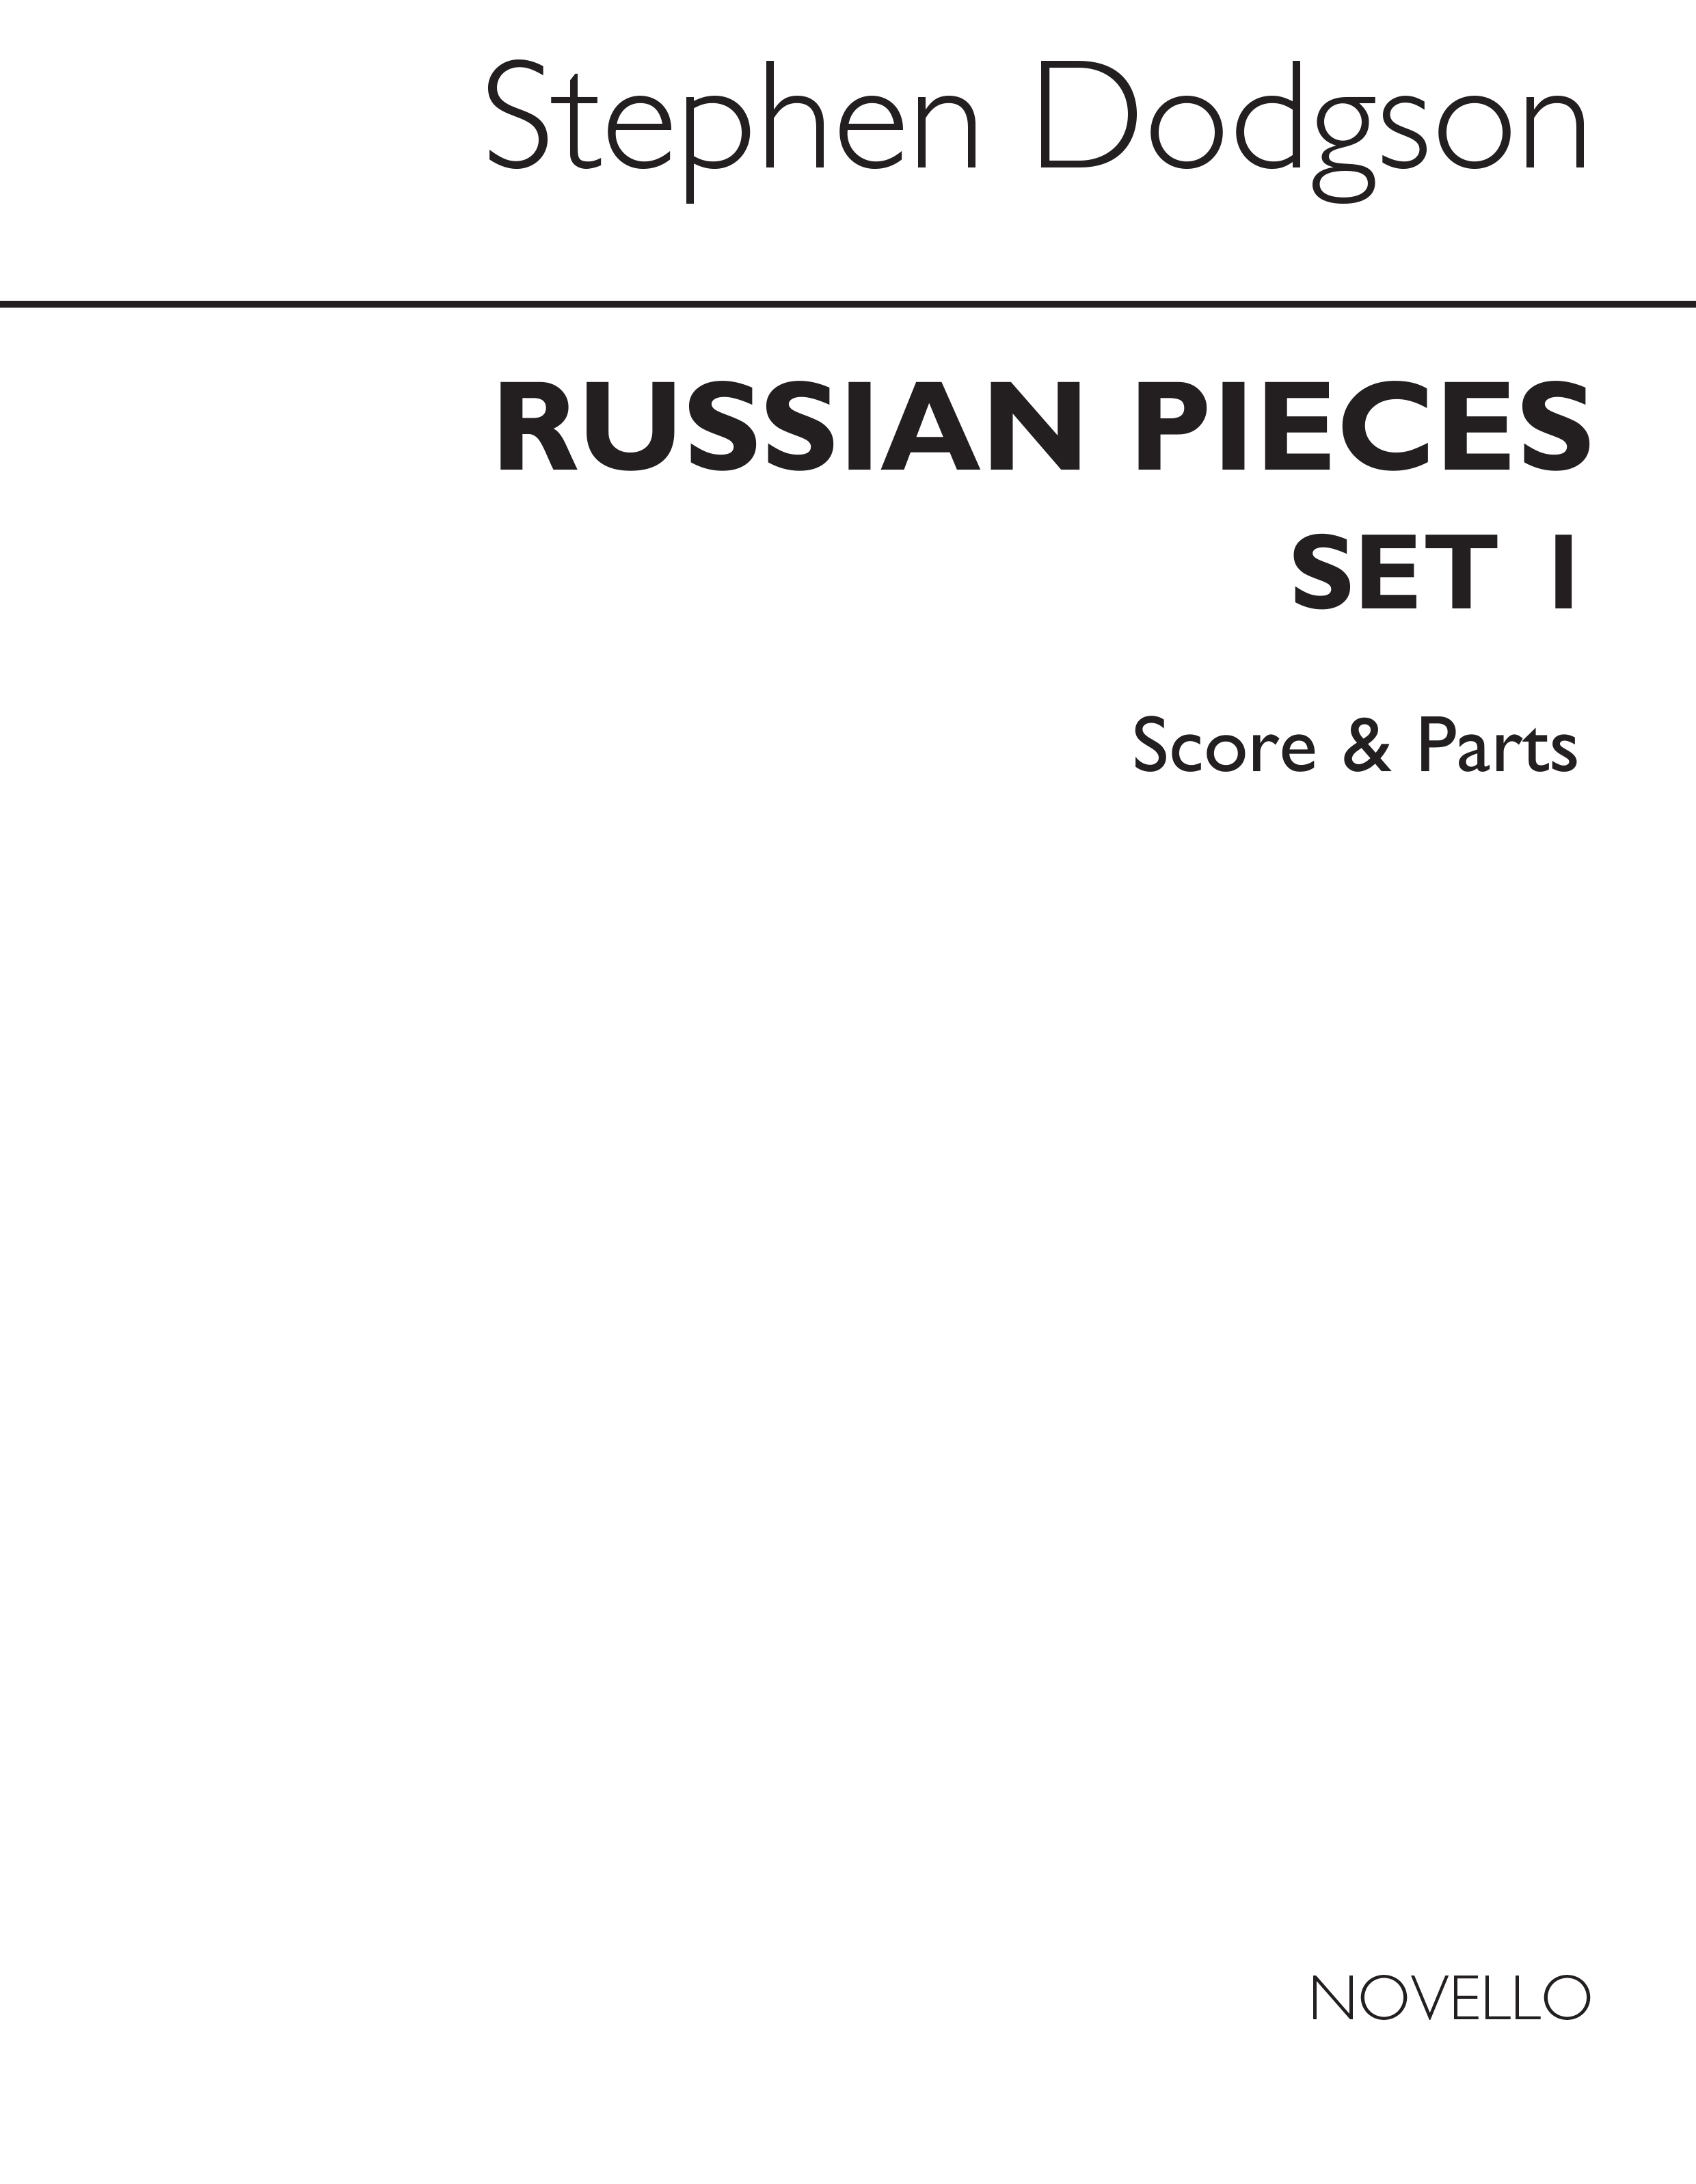 Dodgson: Russian Pieces Set 1 (Score and Parts)